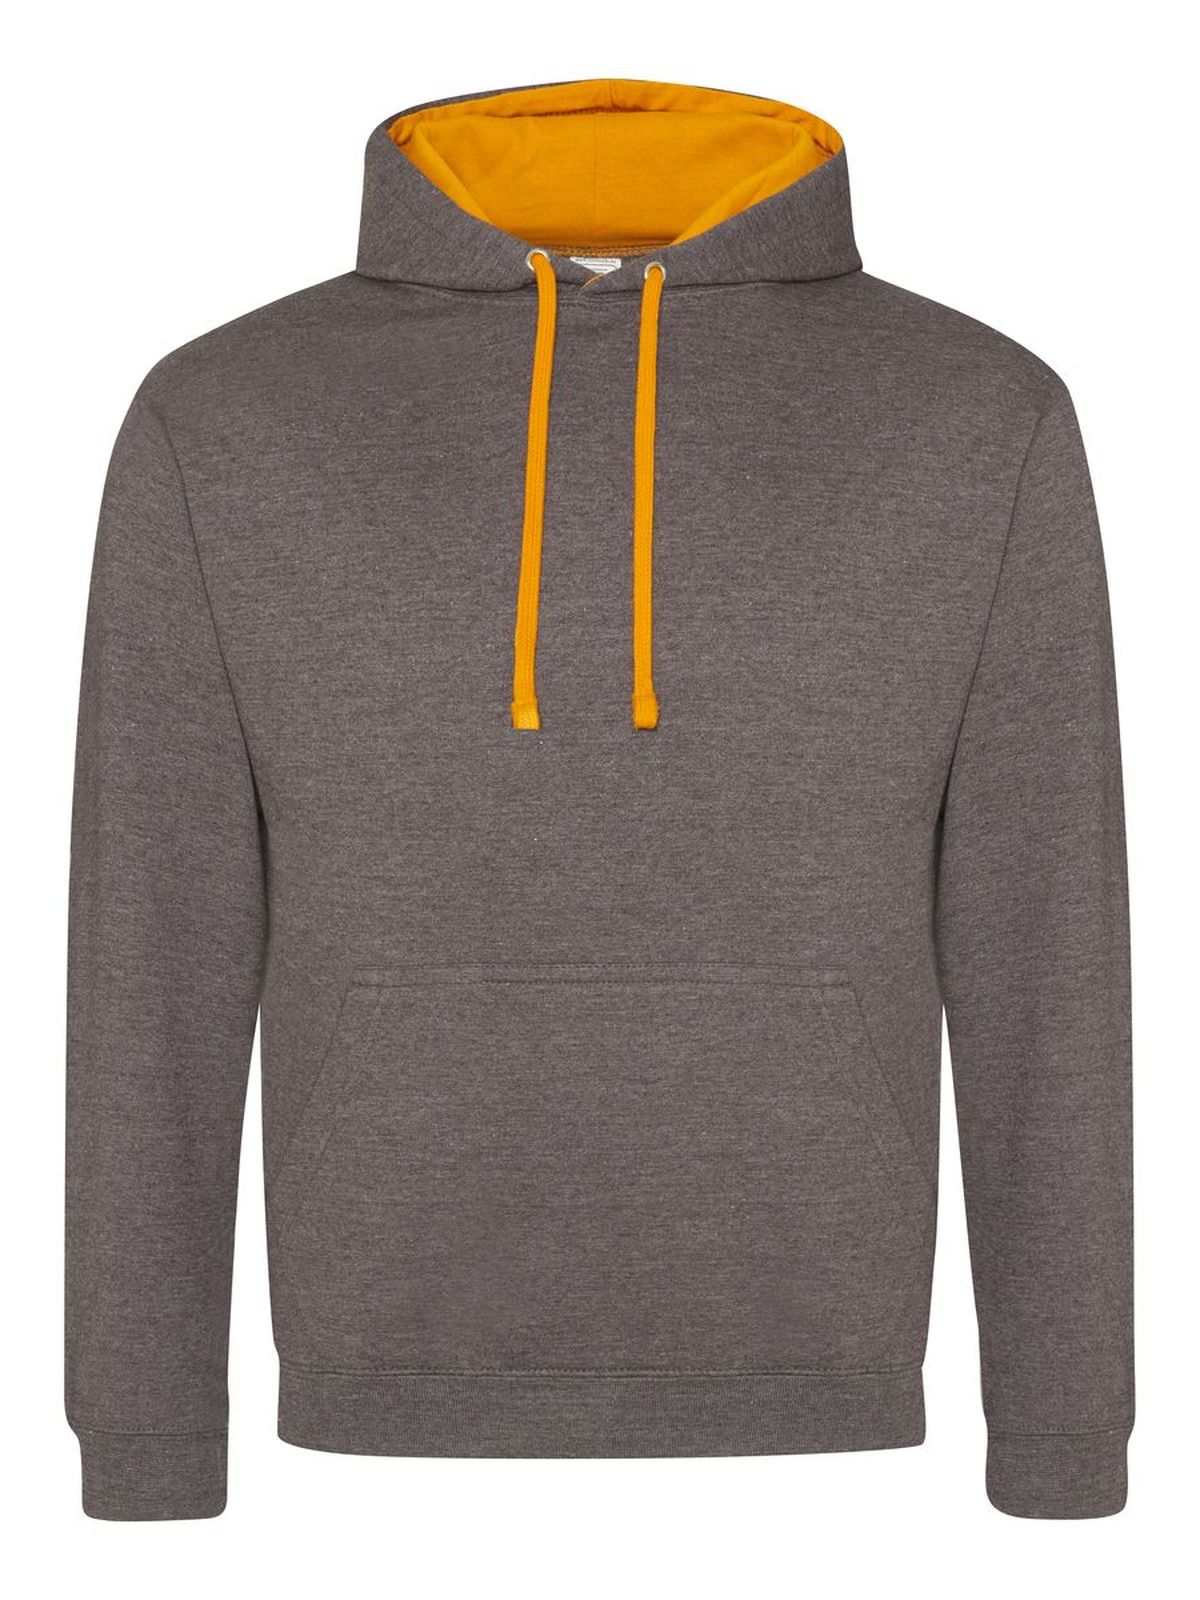 varsity-hoodie-charcoal-orange-crush.webp